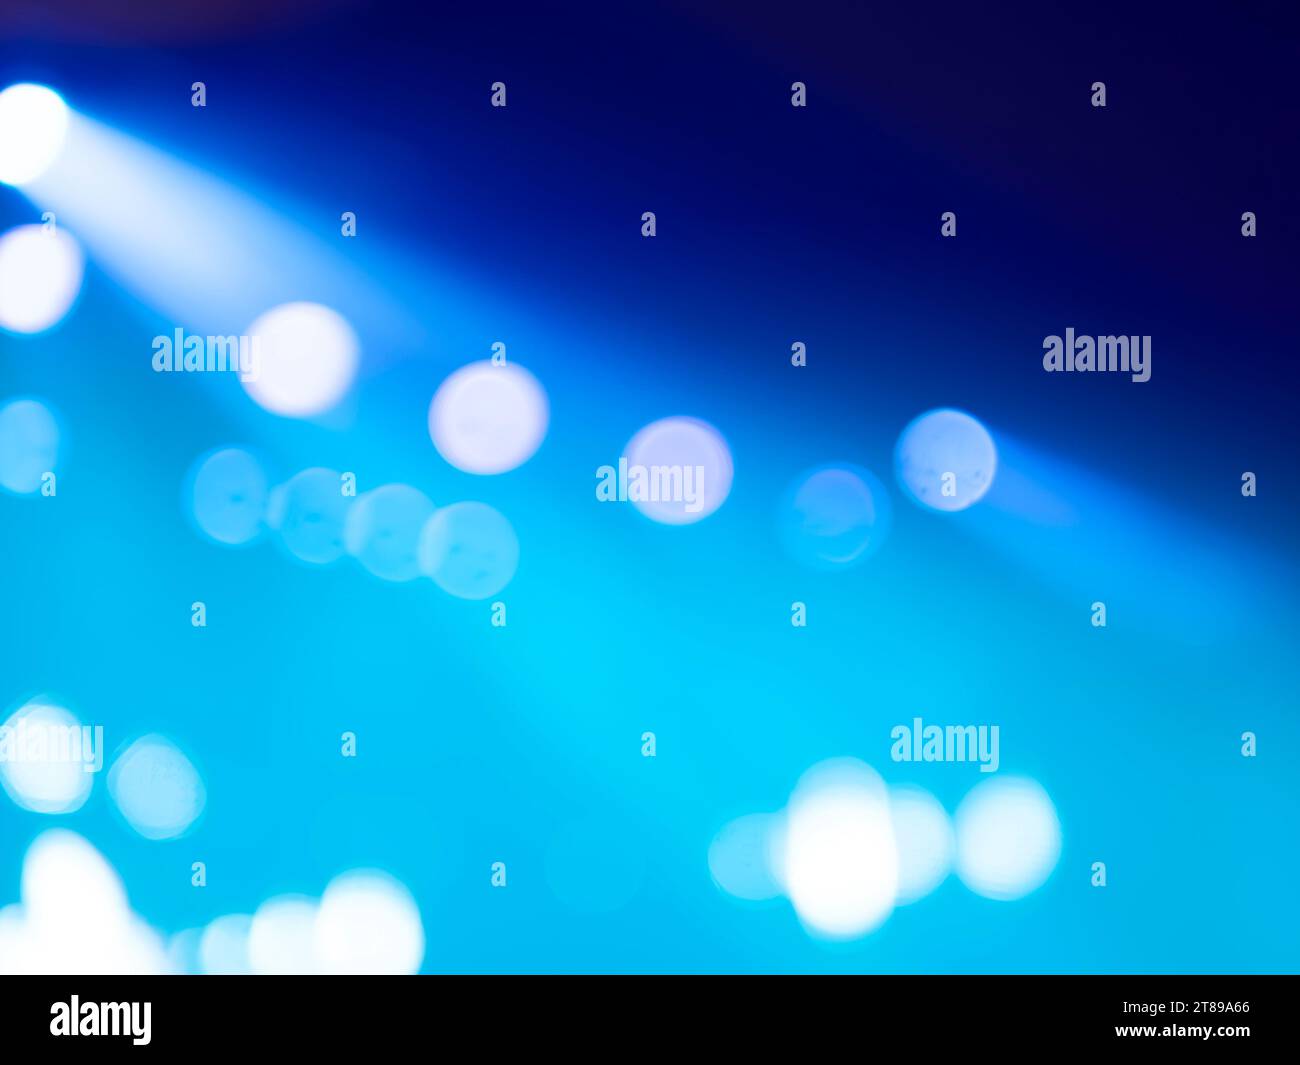 borroso de focos o haces de luz en el escenario, concierto, brillando directamente de izquierda a derecha. Foto de stock